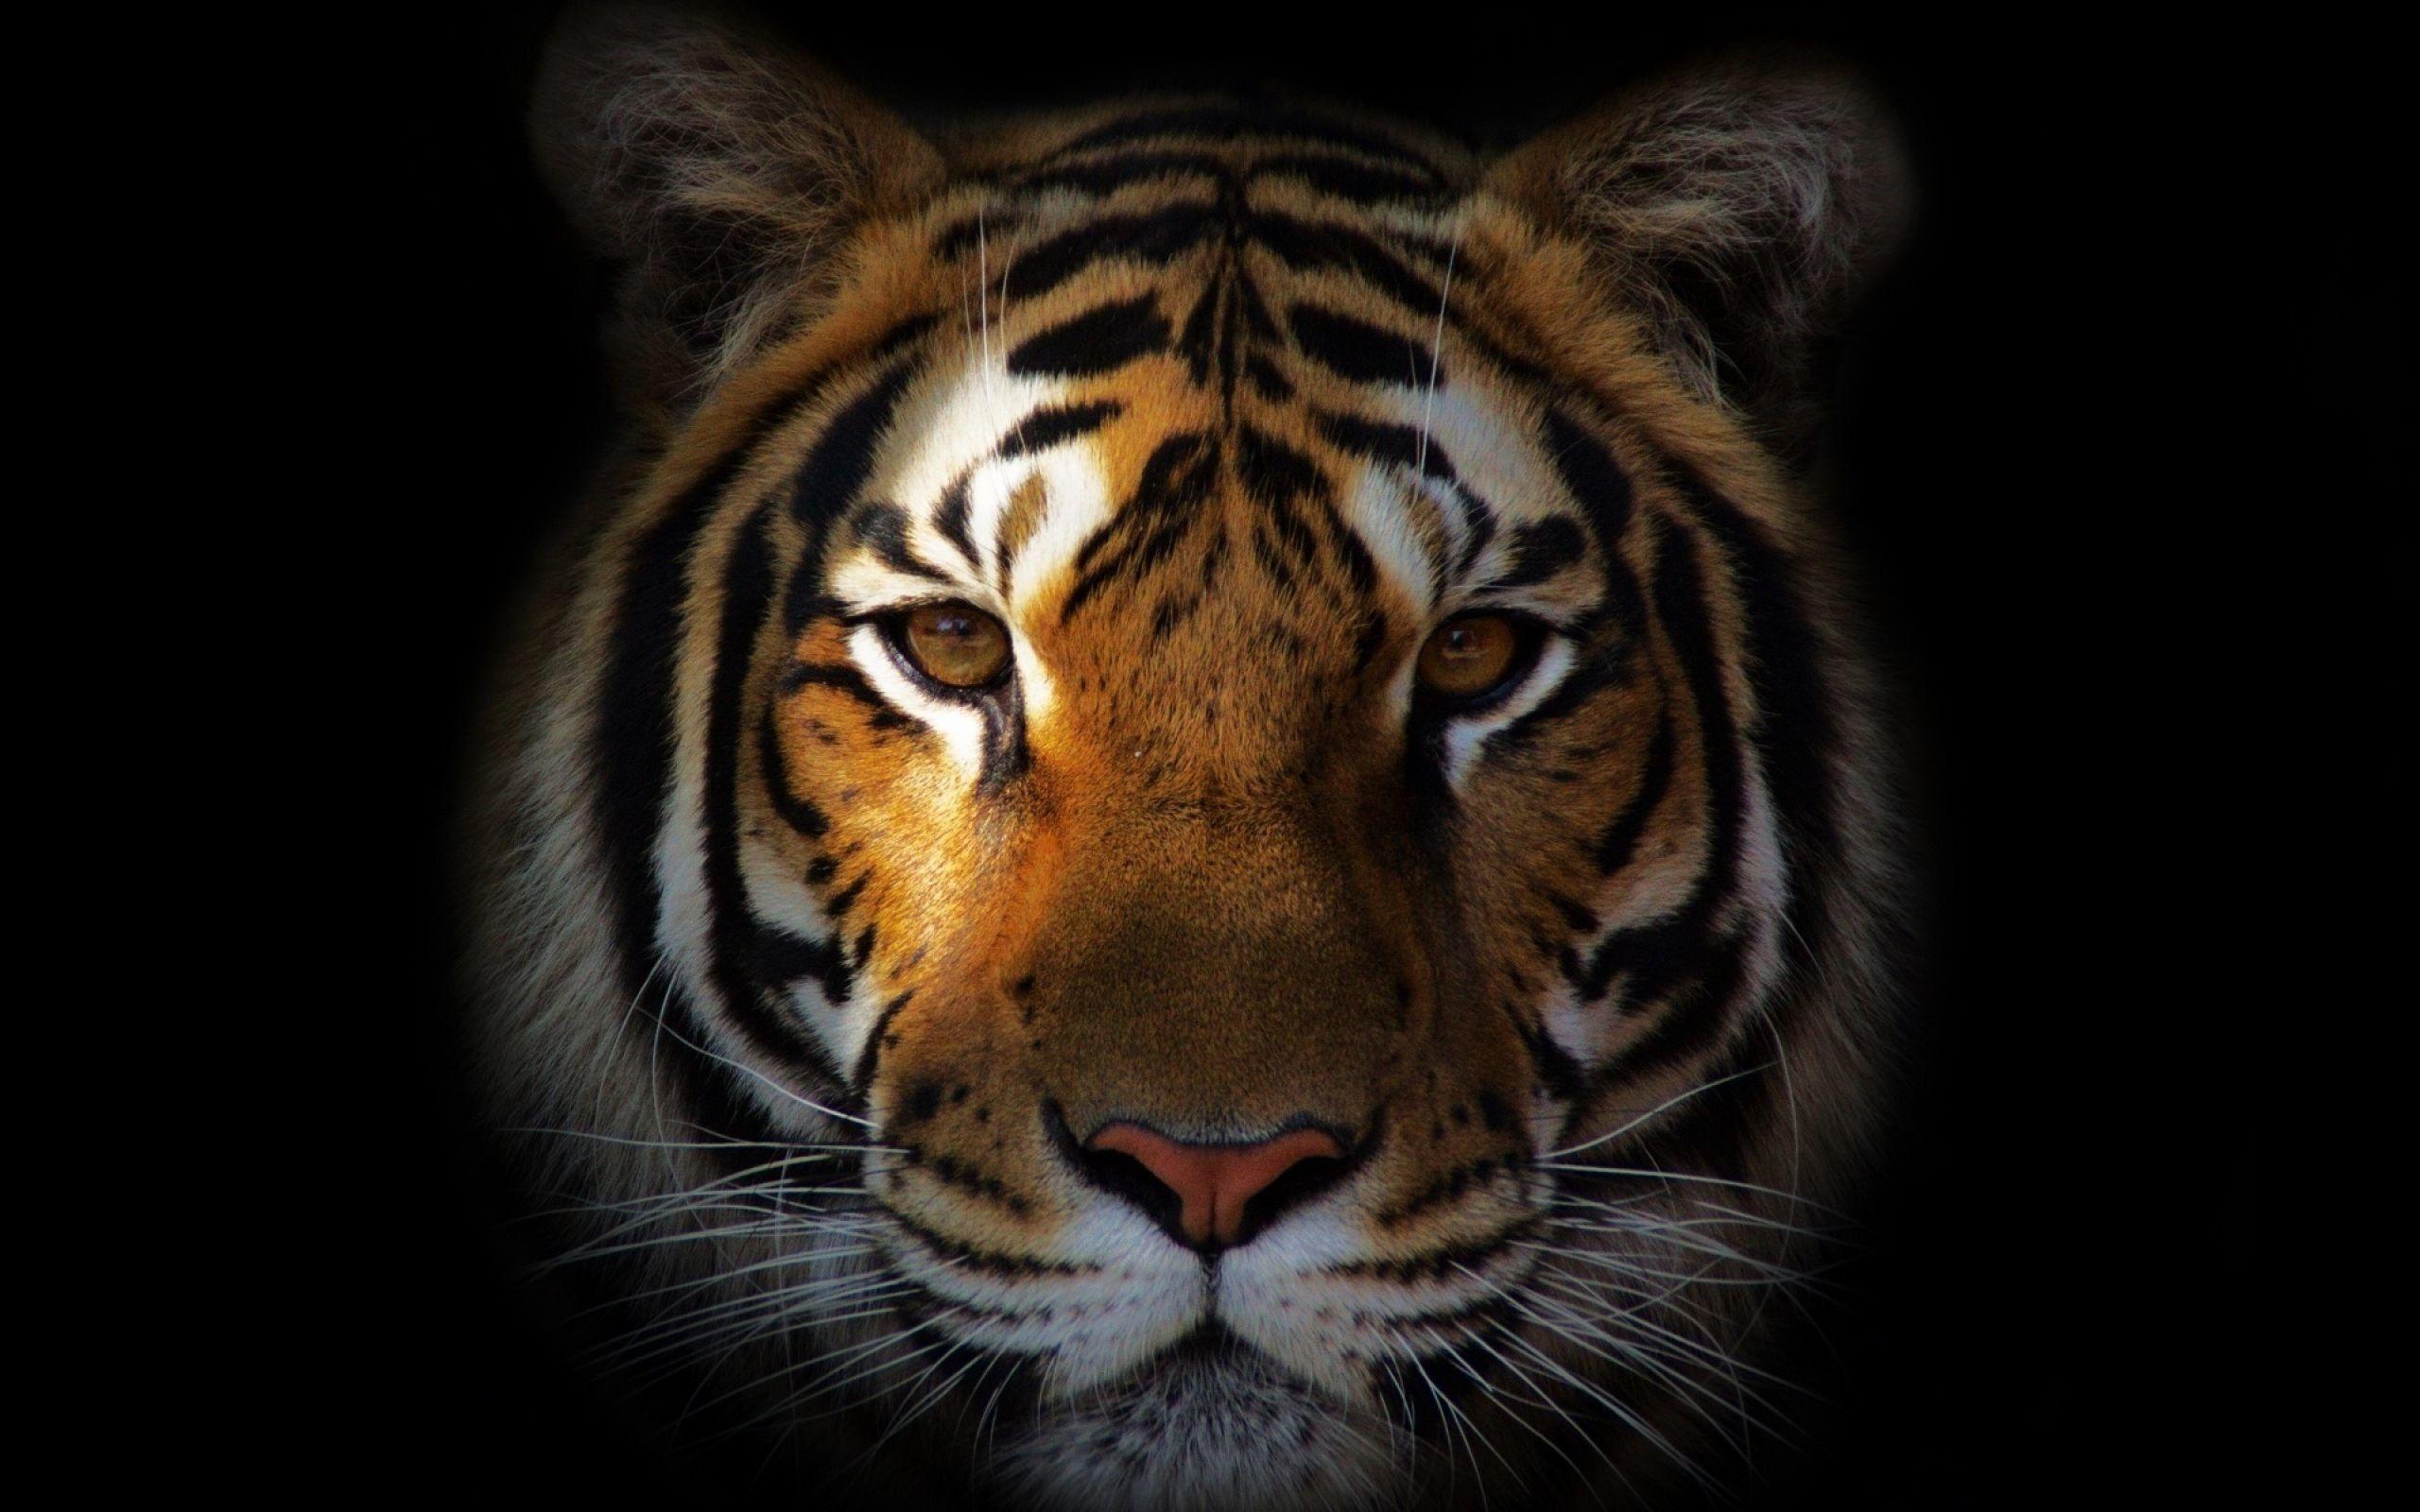 Tiger Desktop Wallpapers - Top Free Tiger Desktop Backgrounds